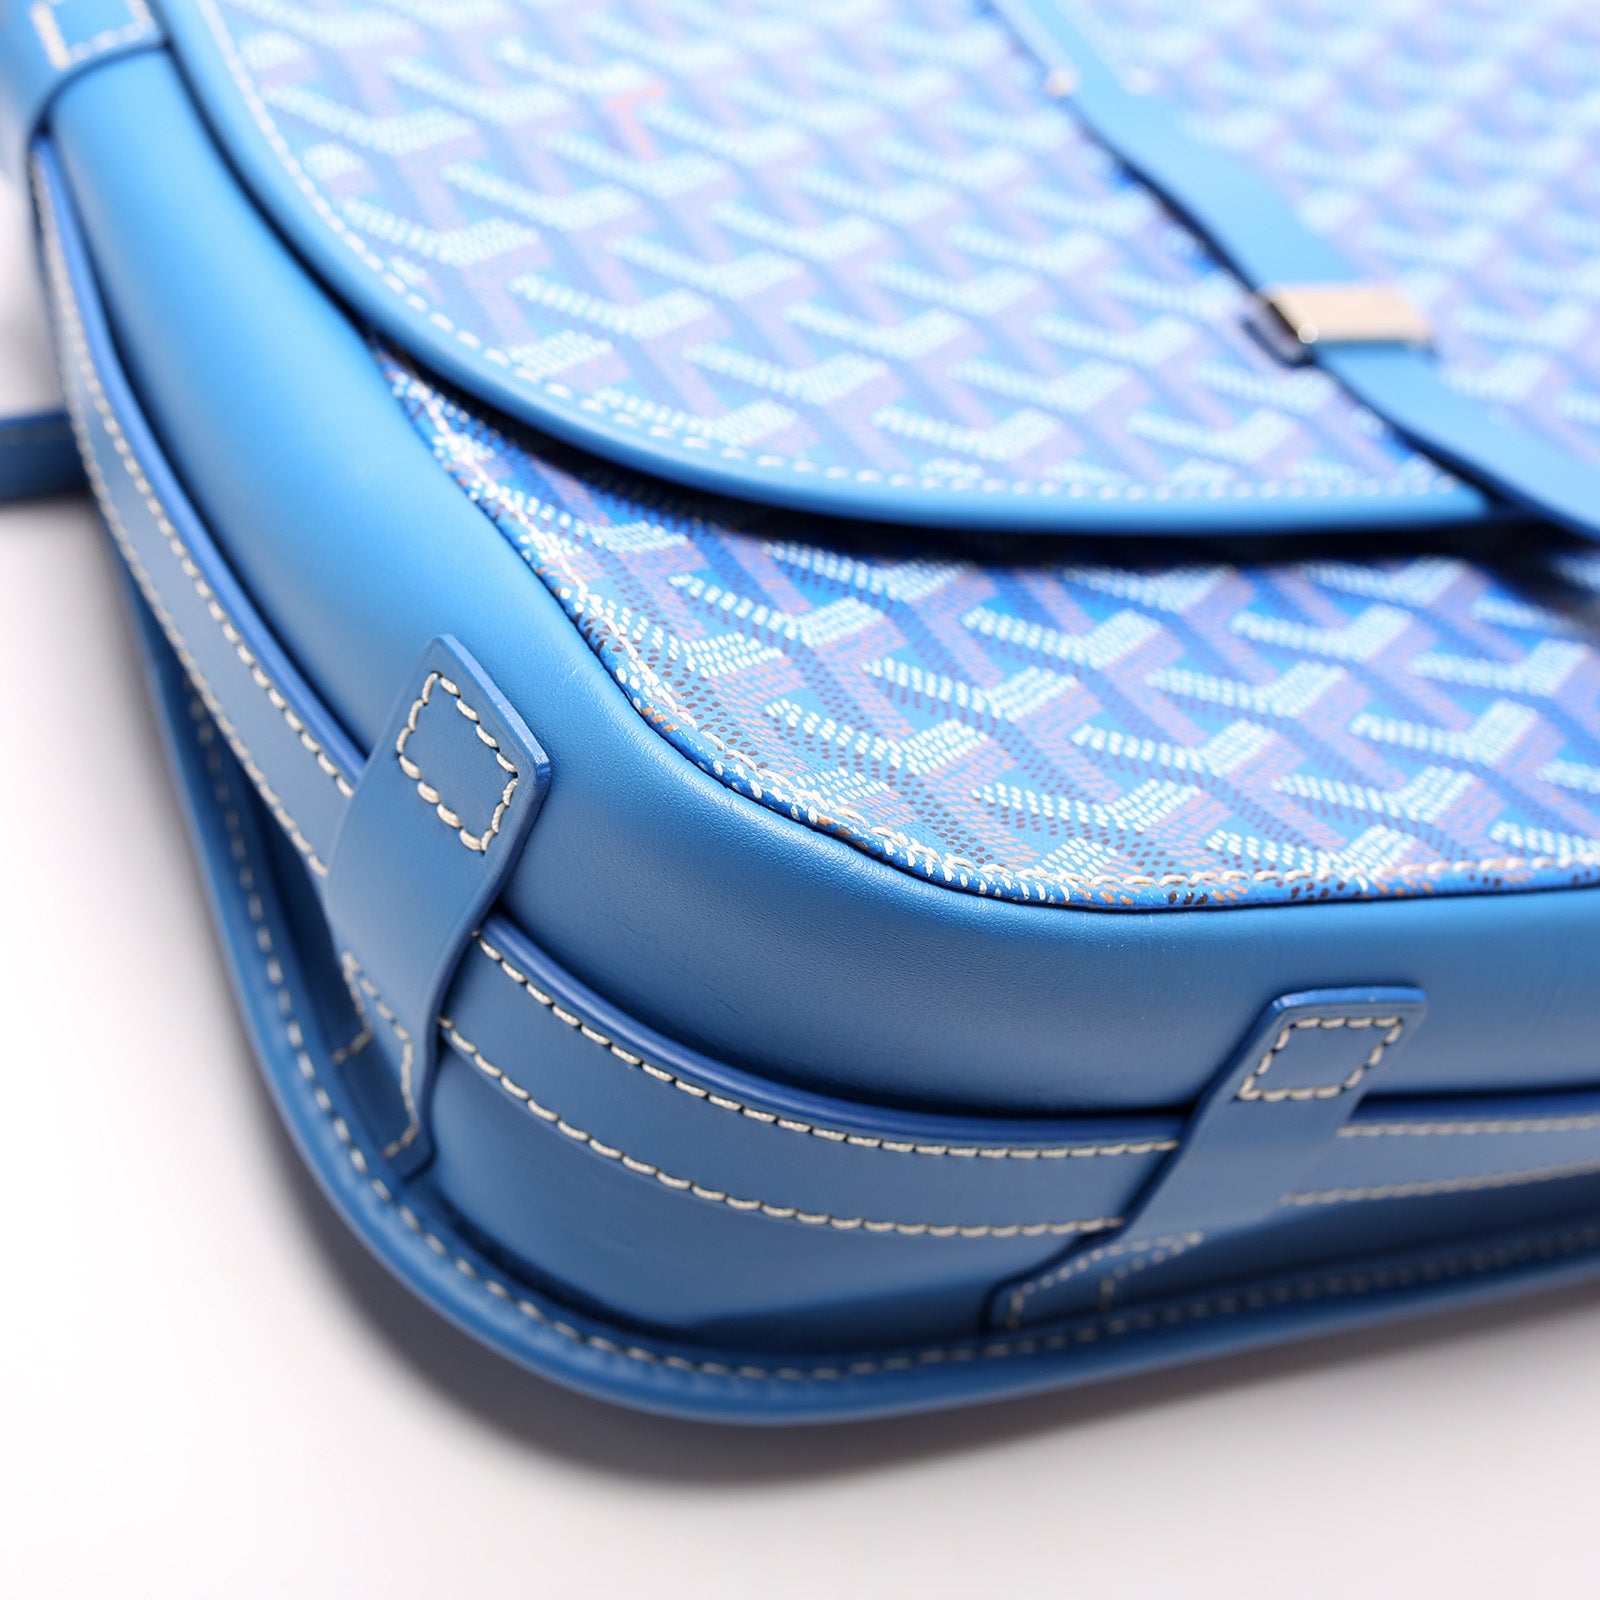 Belvedere II PM – Keeks Designer Handbags